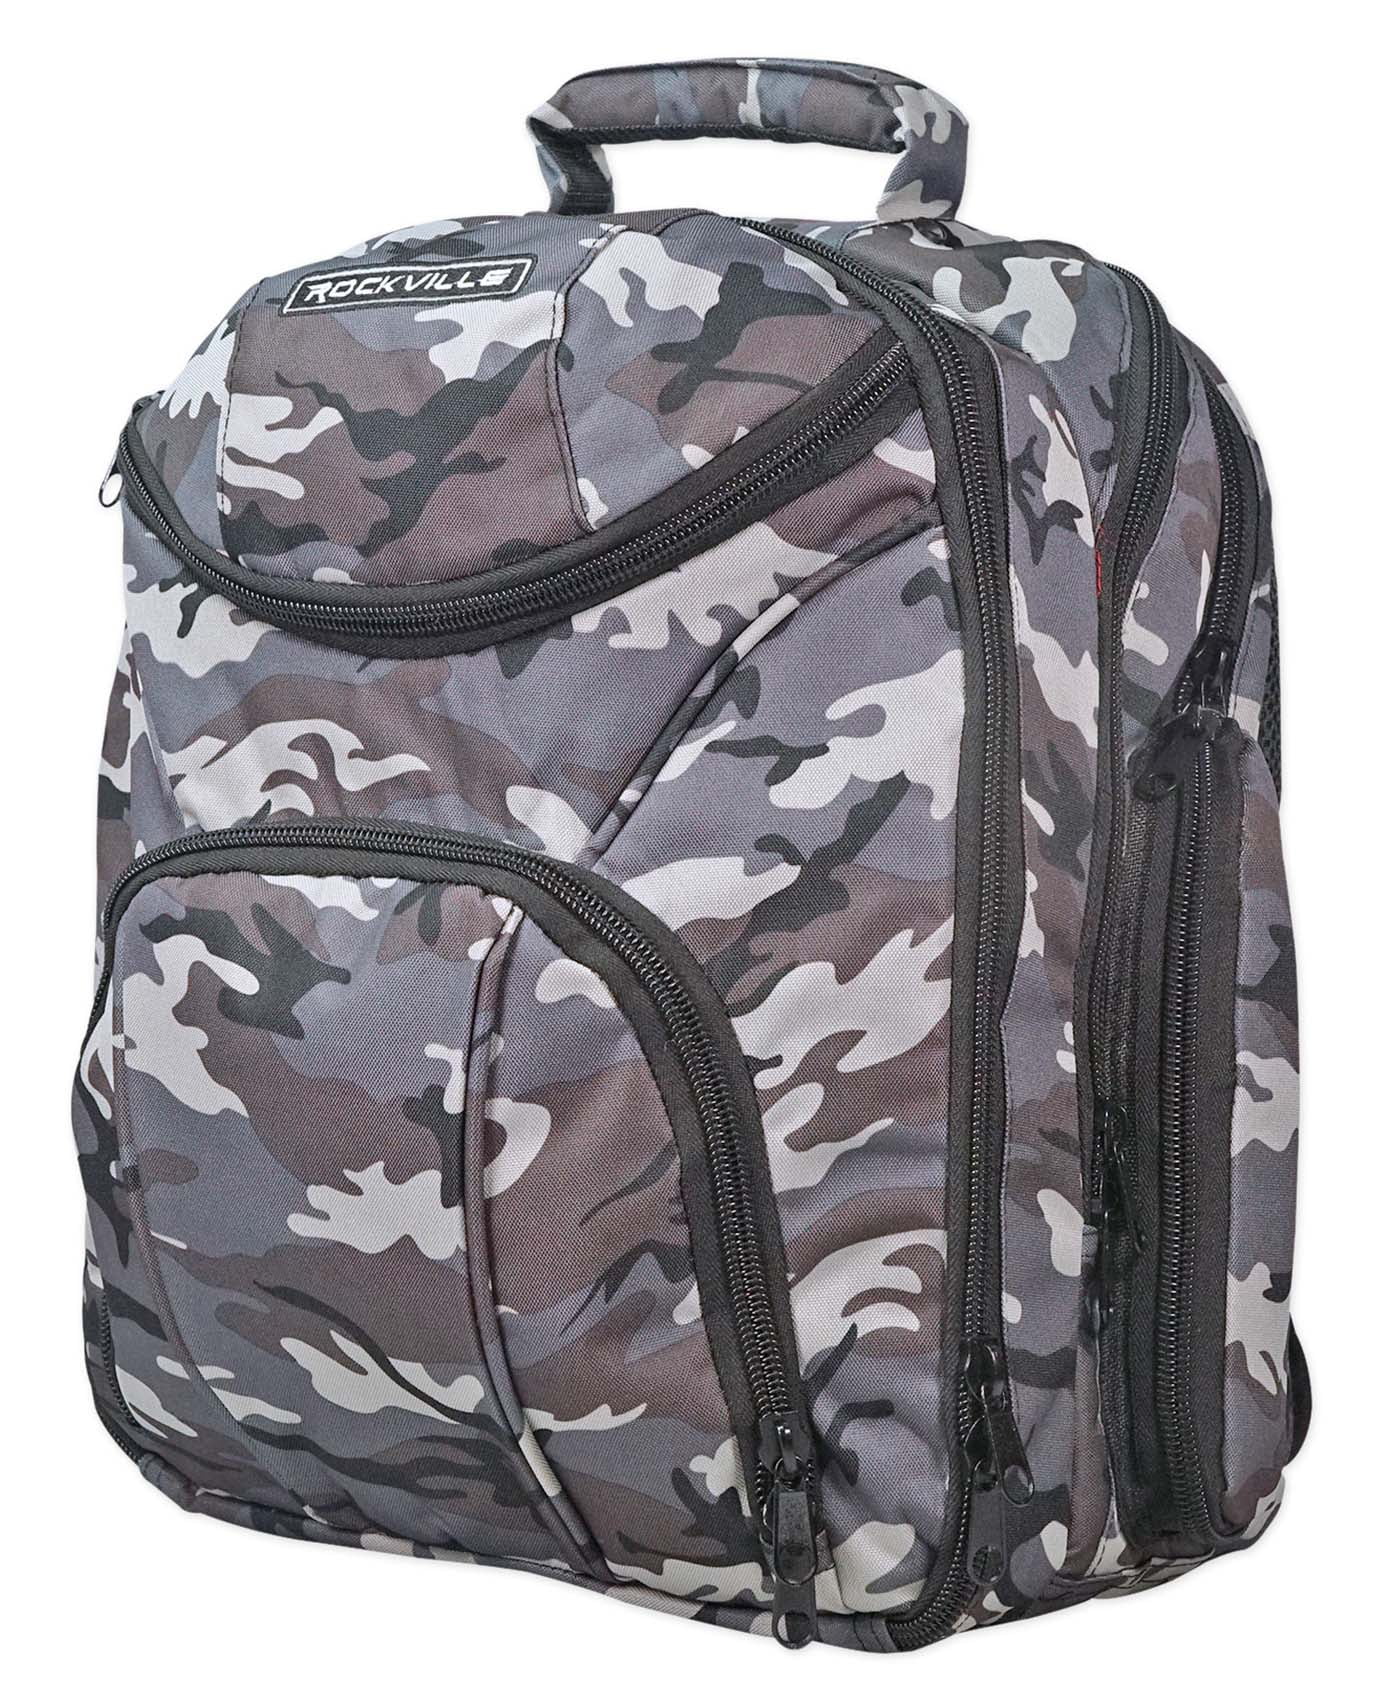 Behringer Rockville Travel Case Camo Backpack Bag For Behringer Q802 USB Mixer 